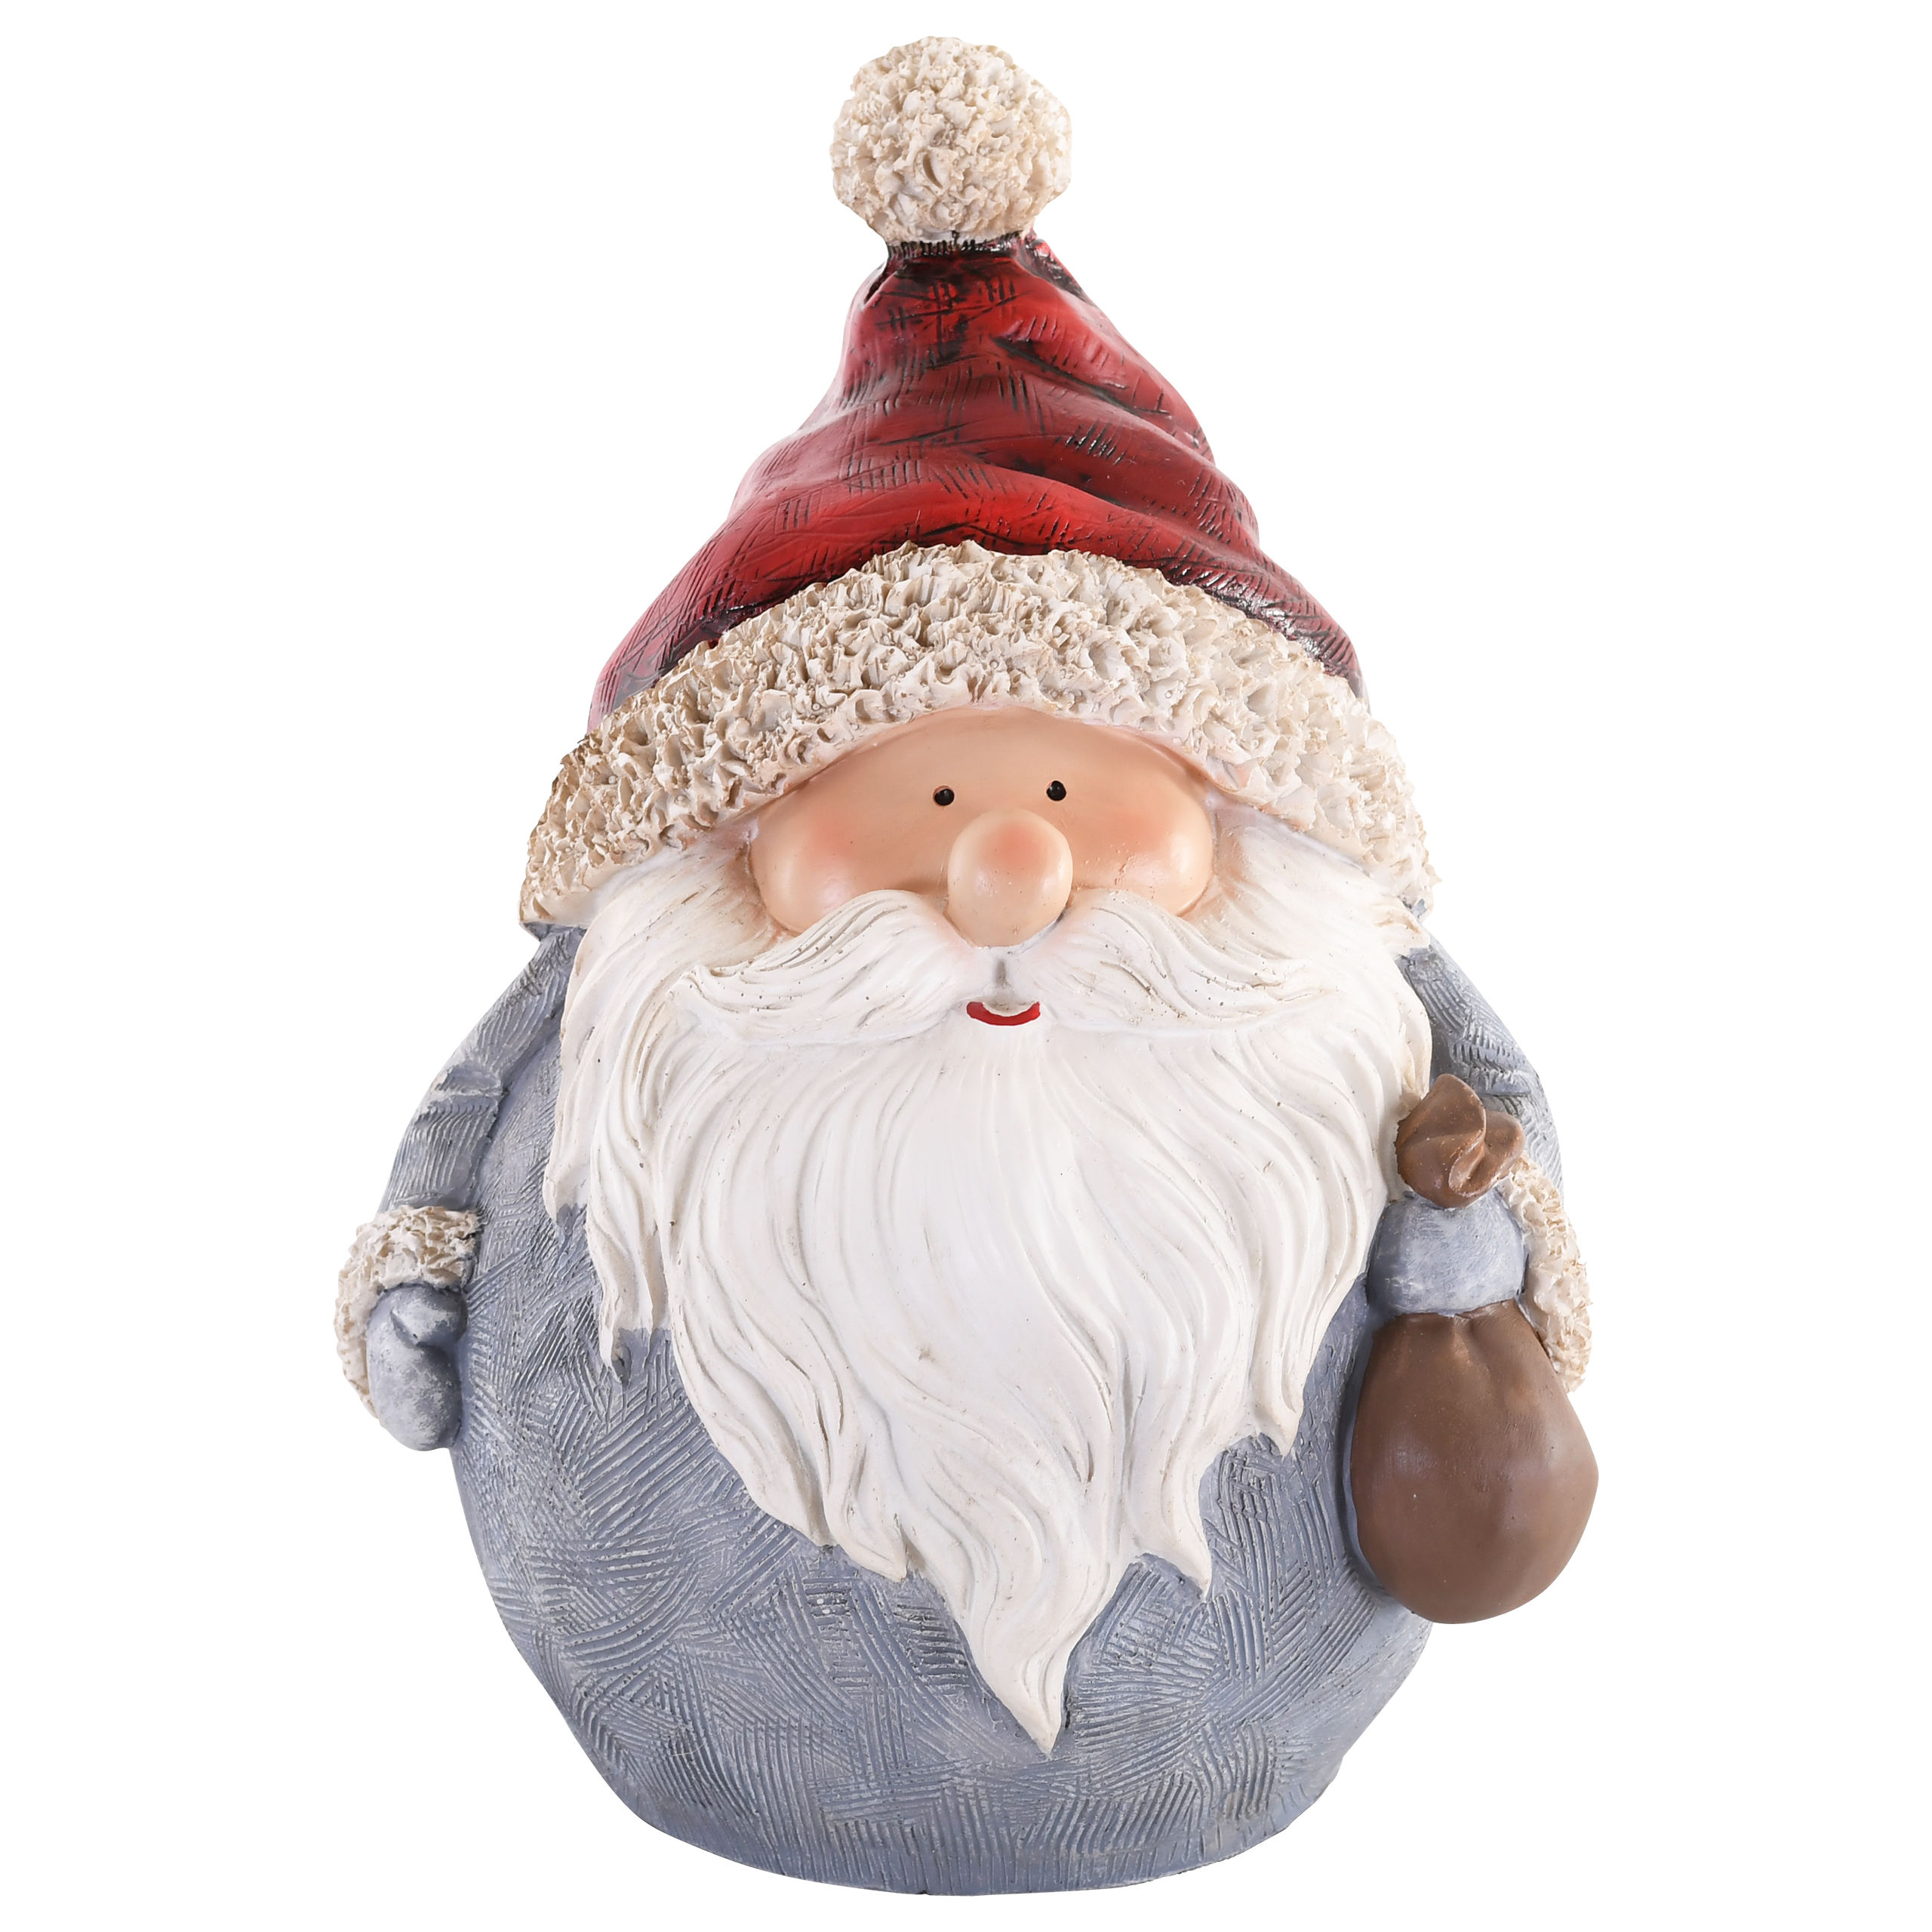 Raburg Dekofigur Weihnachtsmann Kugel mit Säckchen, blauer Mantel, rote Mütze, stehend, 27 cm hoch